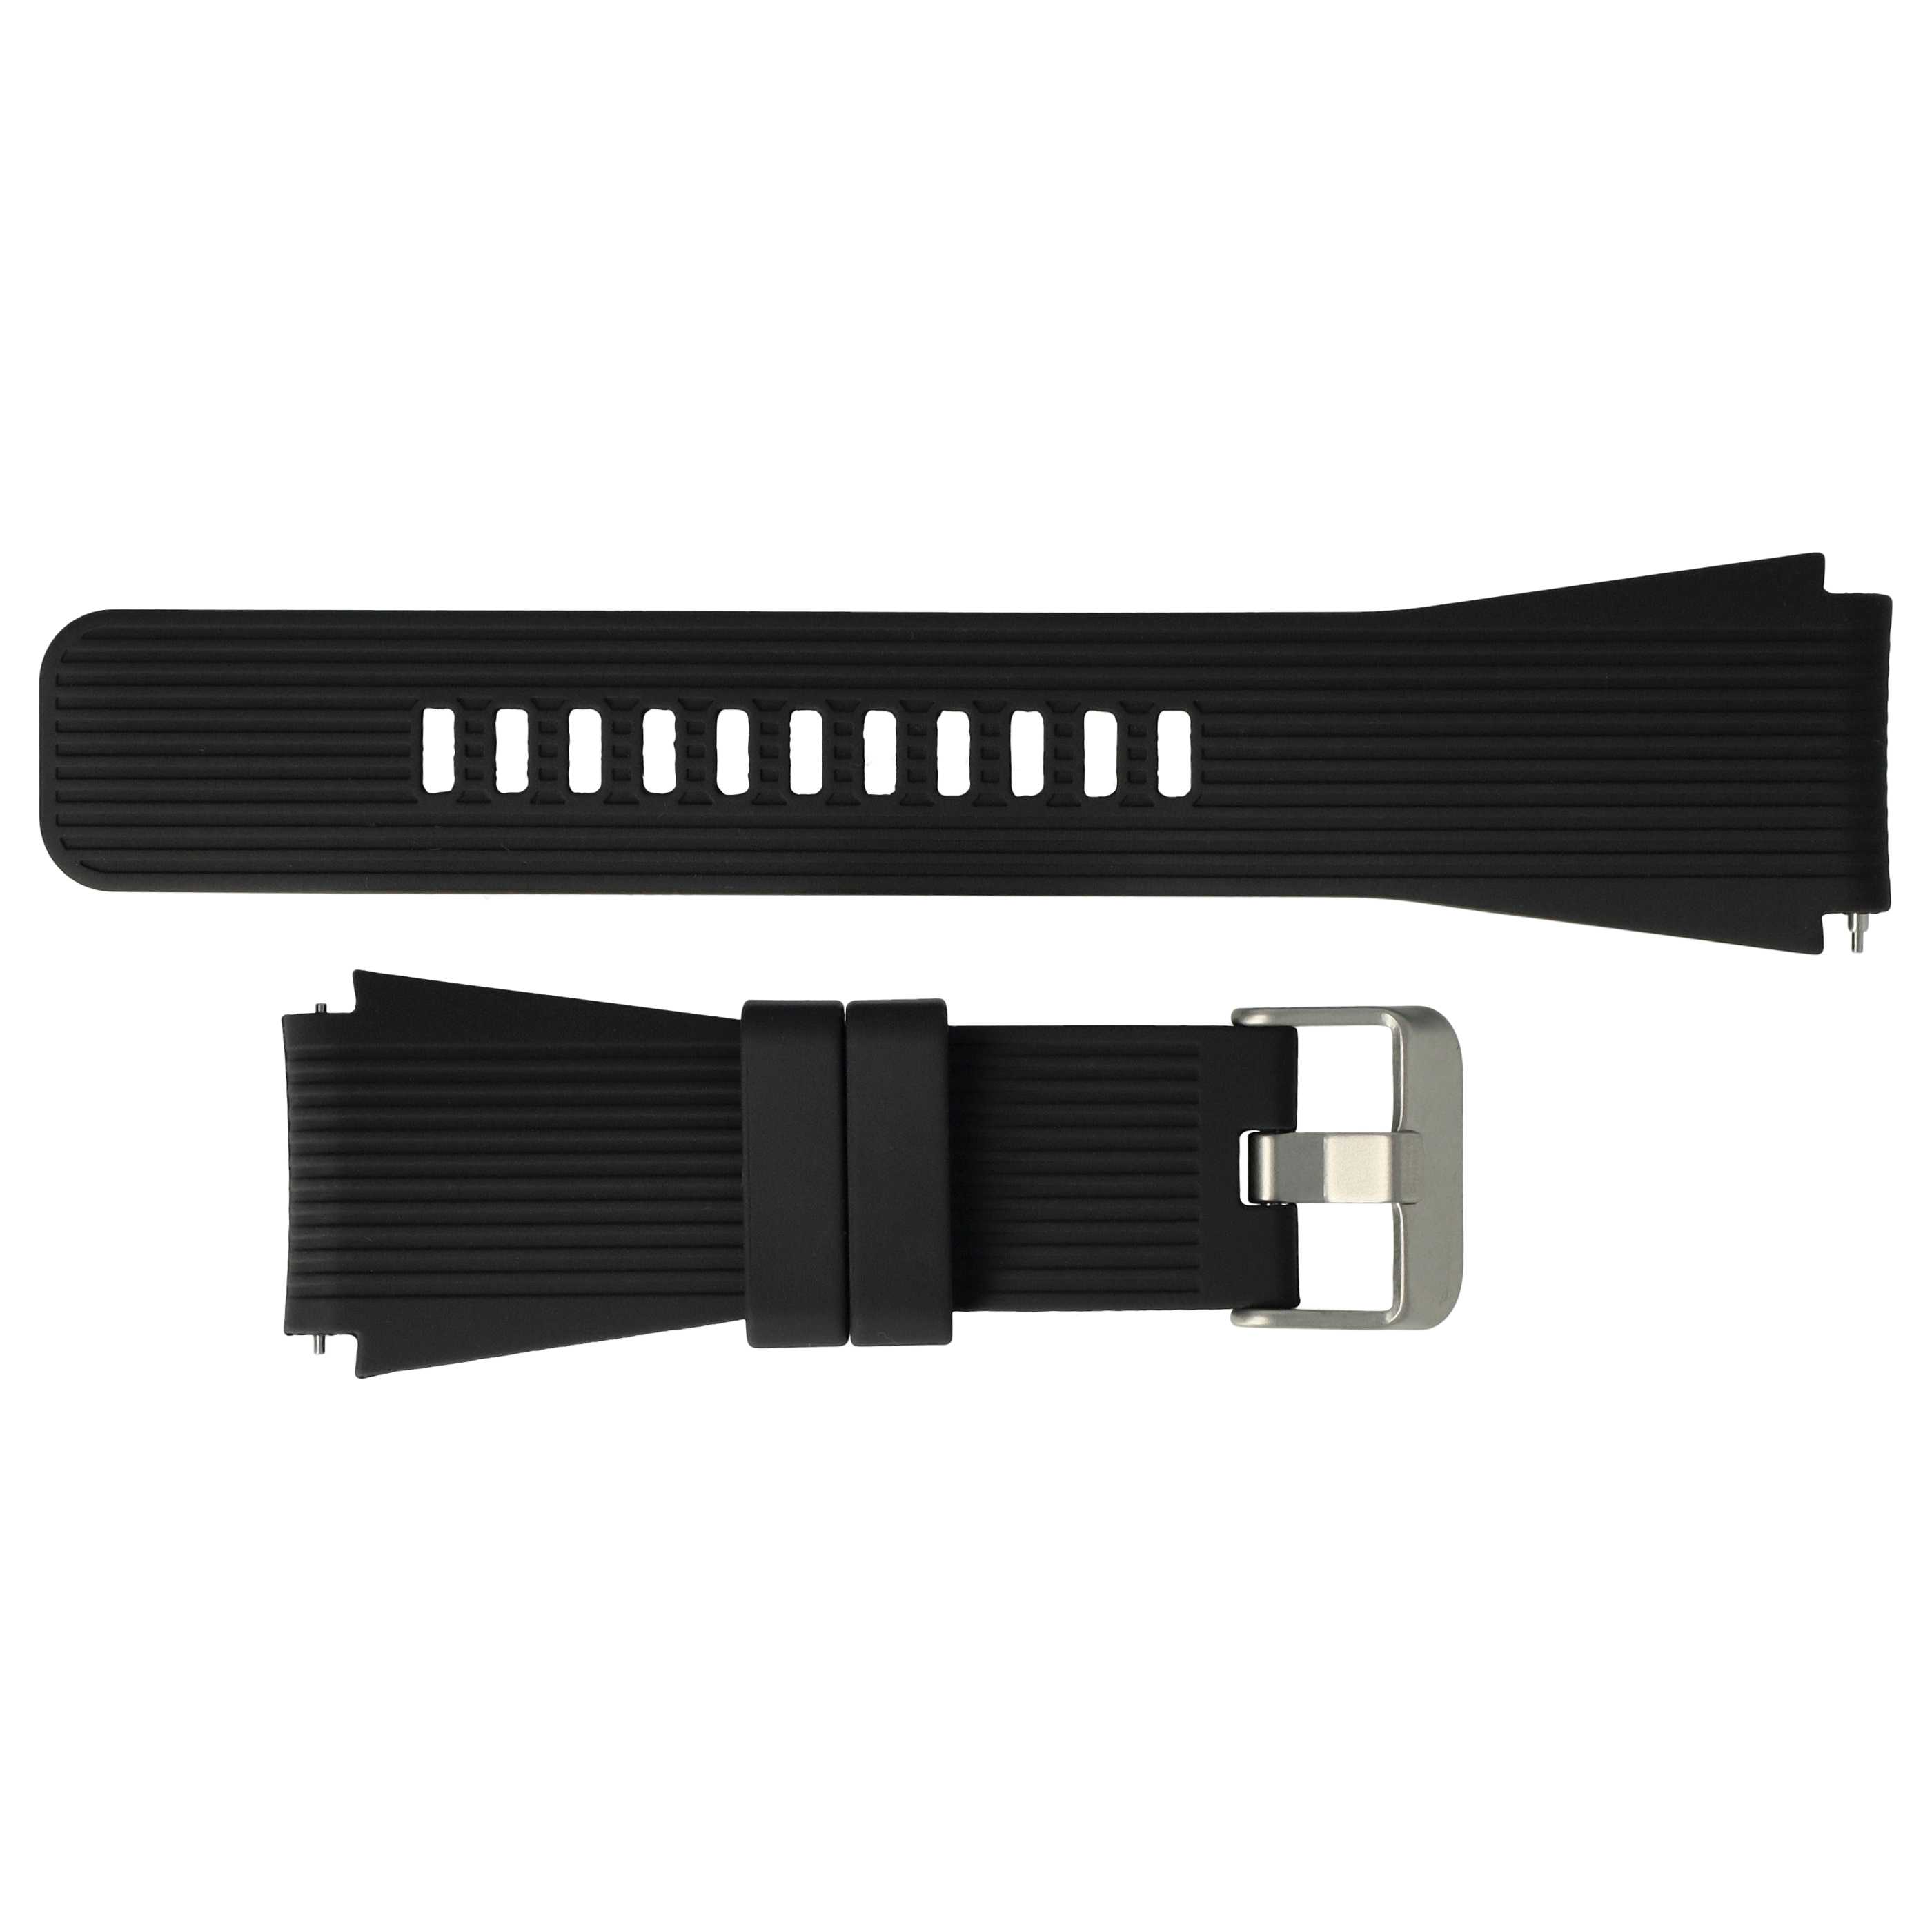 Bracelet pour montre intelligente Samsung Galaxy Watch / Gear - 13,1 + 7,1 cm de long, 22mm de large, silicone